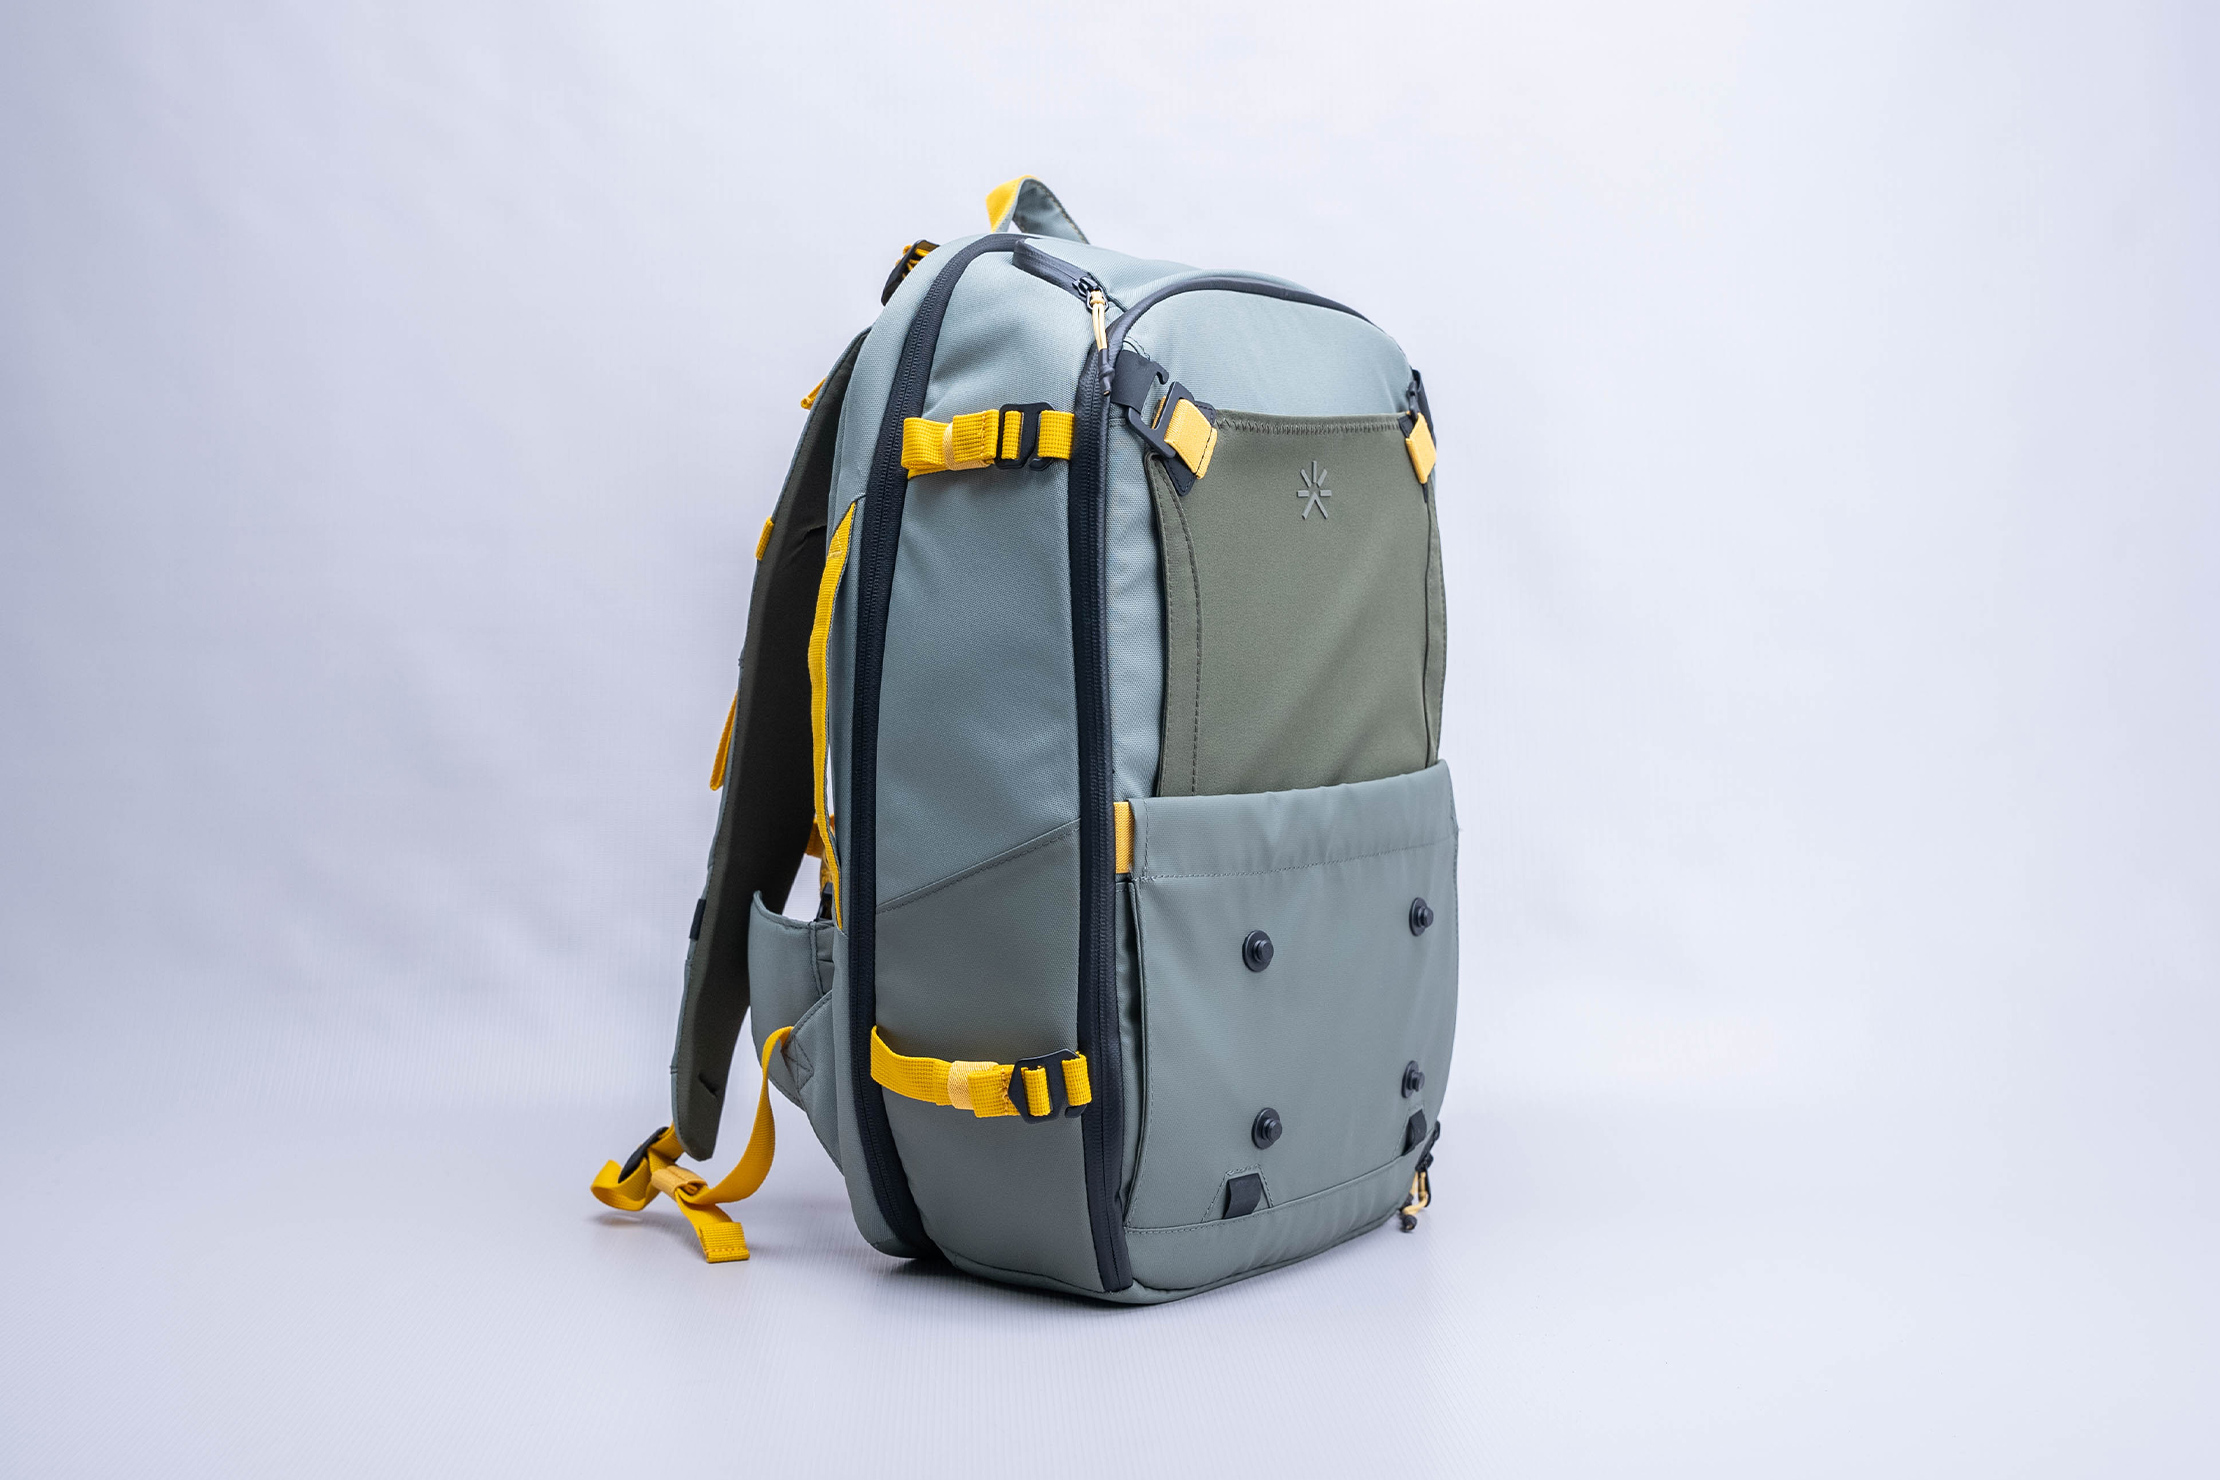 Tropicfeel Hive Backpack Full